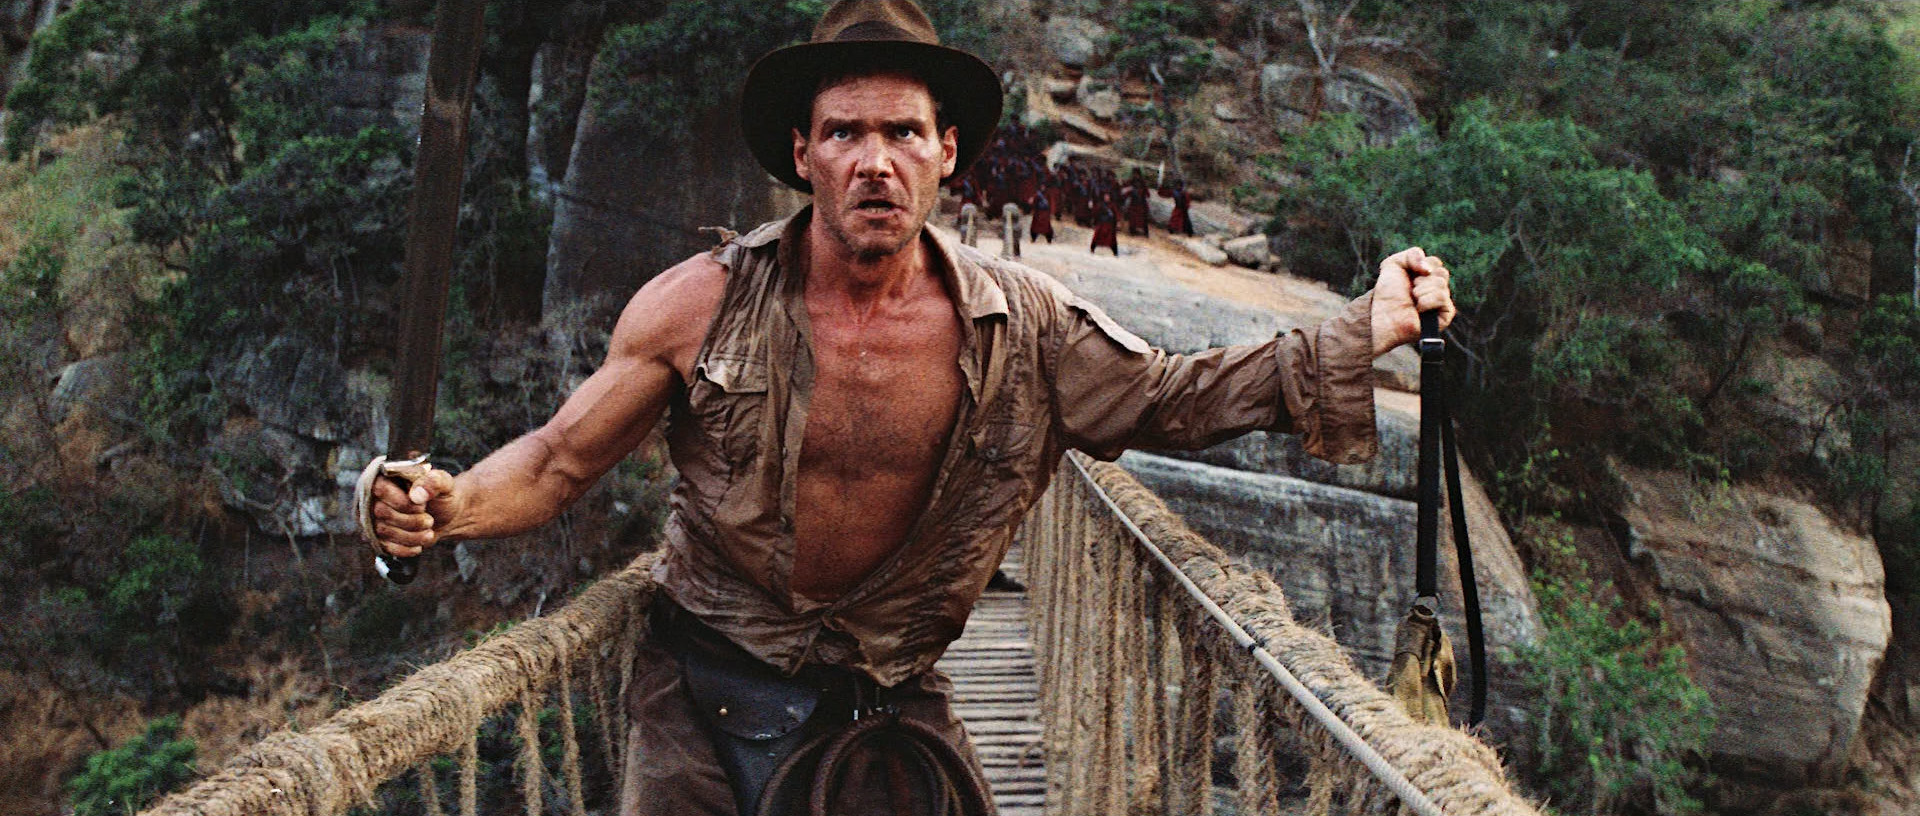 Indiana Jones: The Temple of Doom